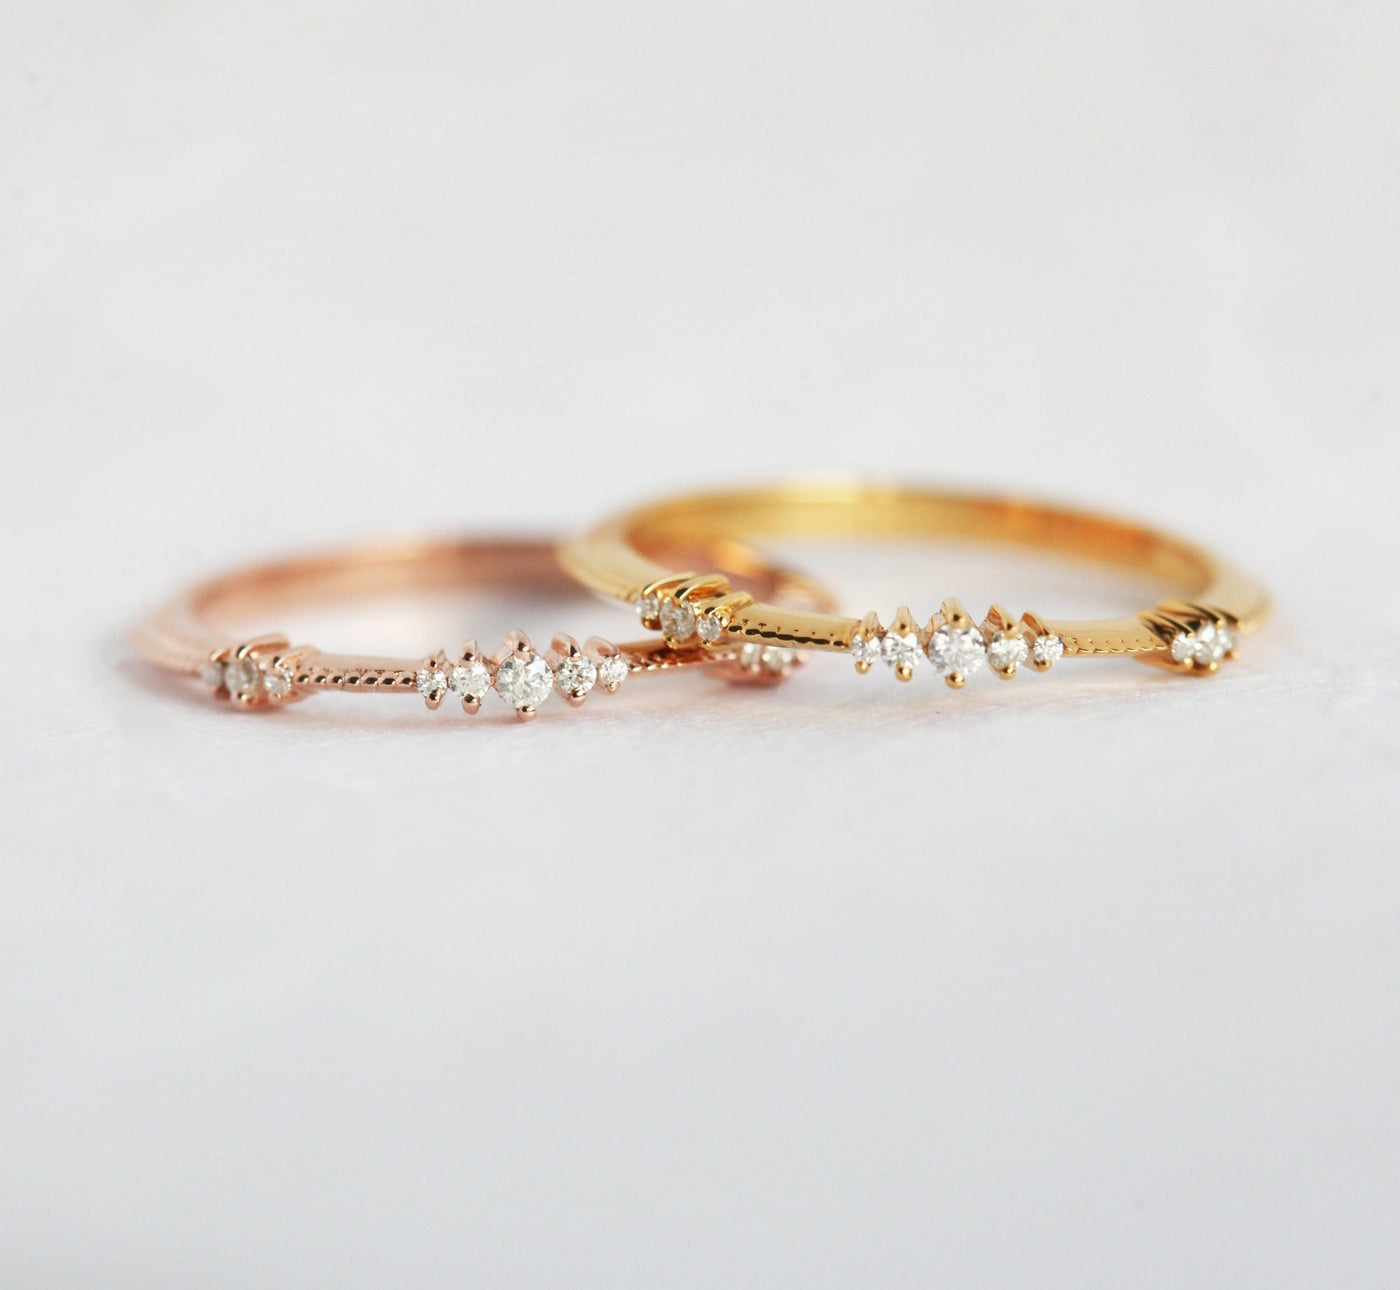 Unique Round Diamond Cluster Wedding Ring